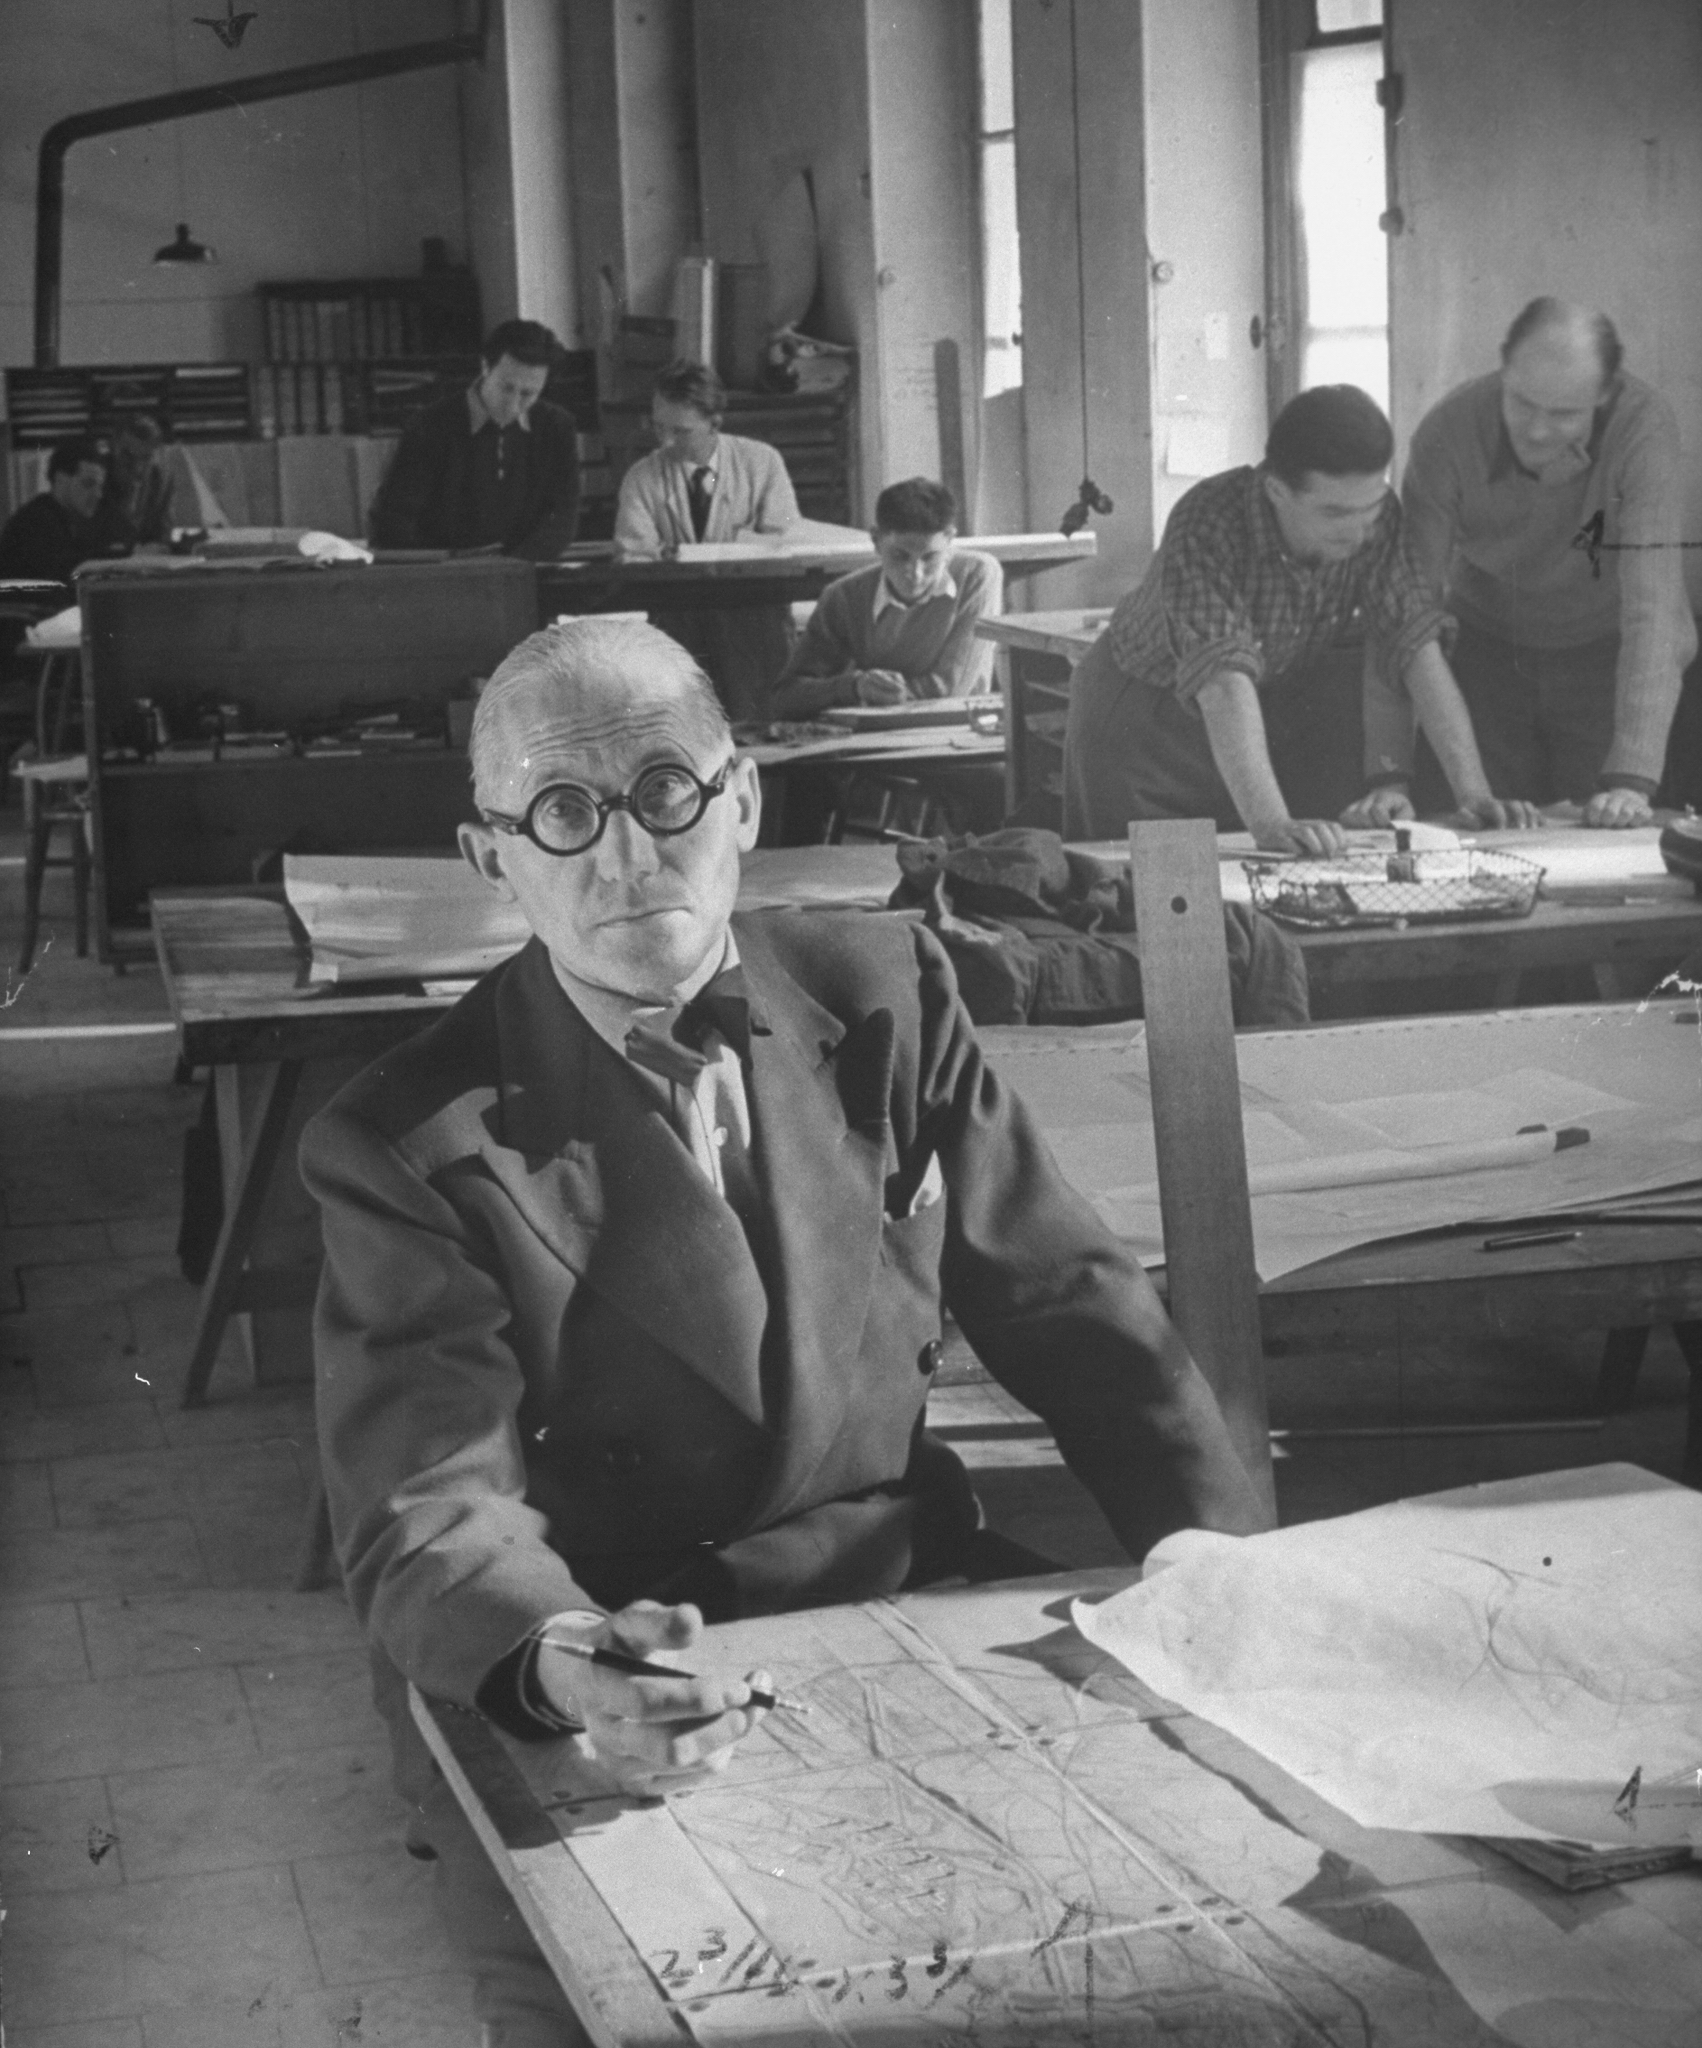 Le Corbusier w swoim paryskim atelier. Jerzy Sołtan w prawym górnym rogu, nachyla się nad projektem z kolegą, maj 1946 r.